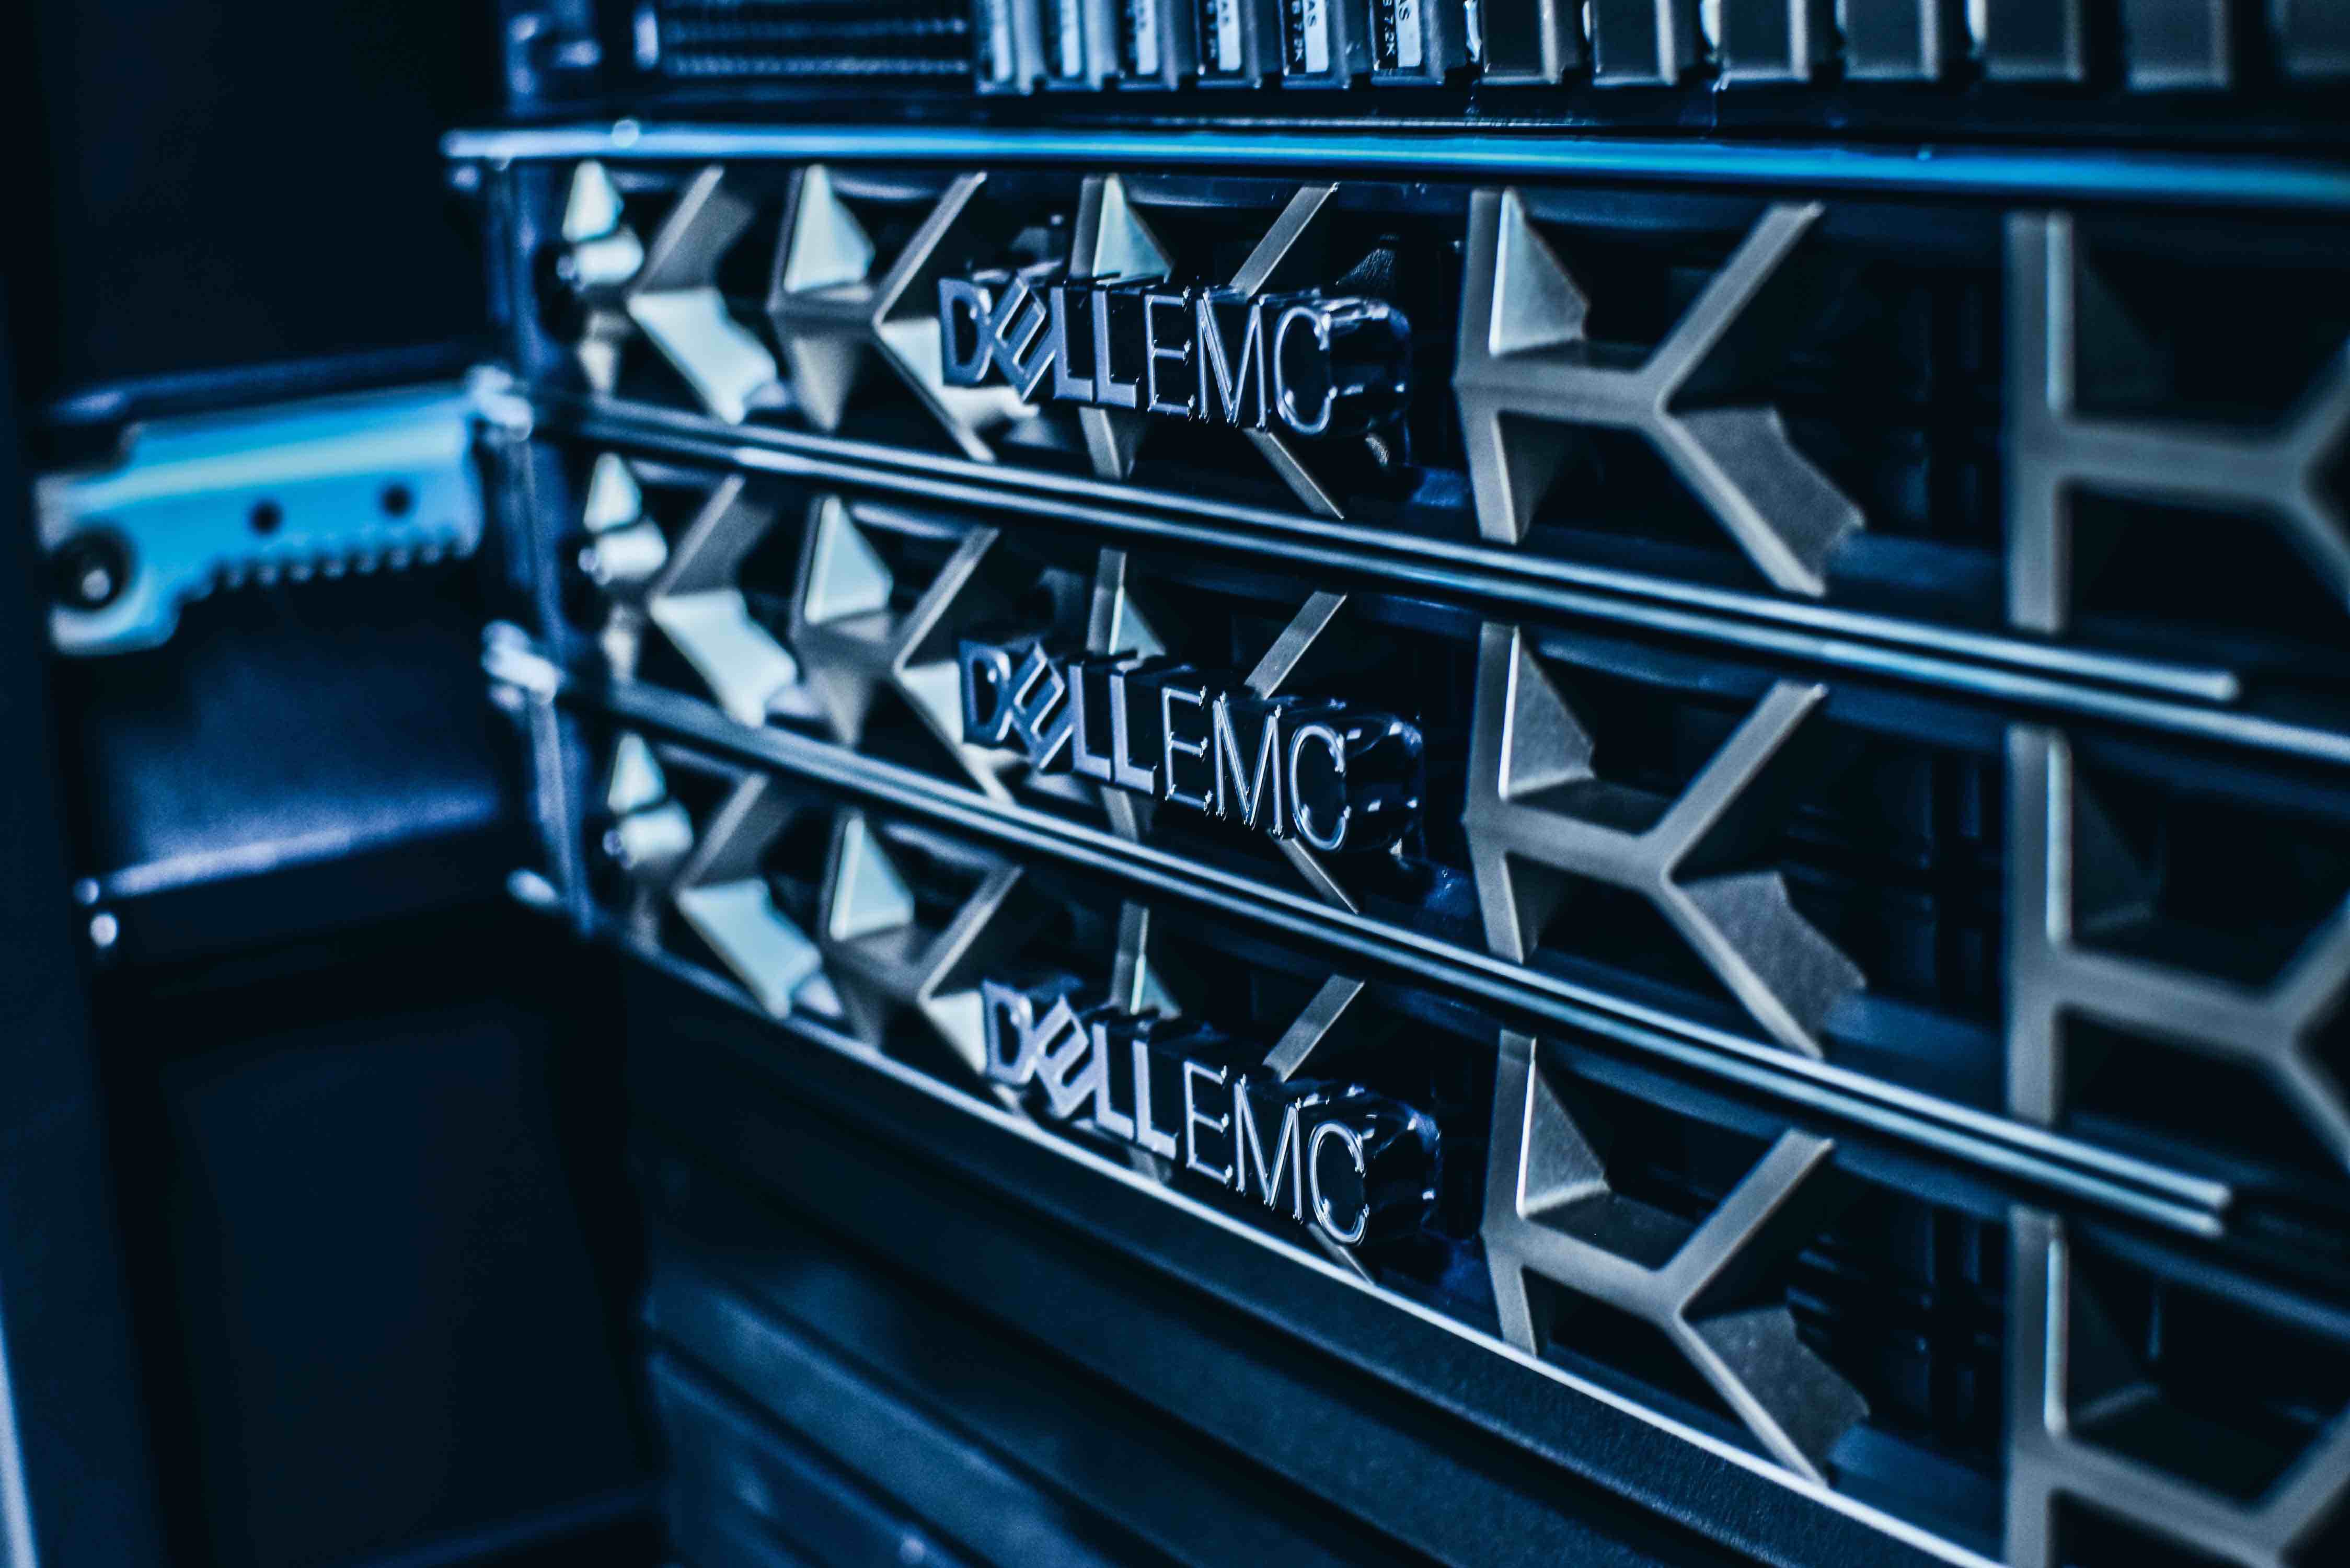 Dell EMC branded servers in a server rack